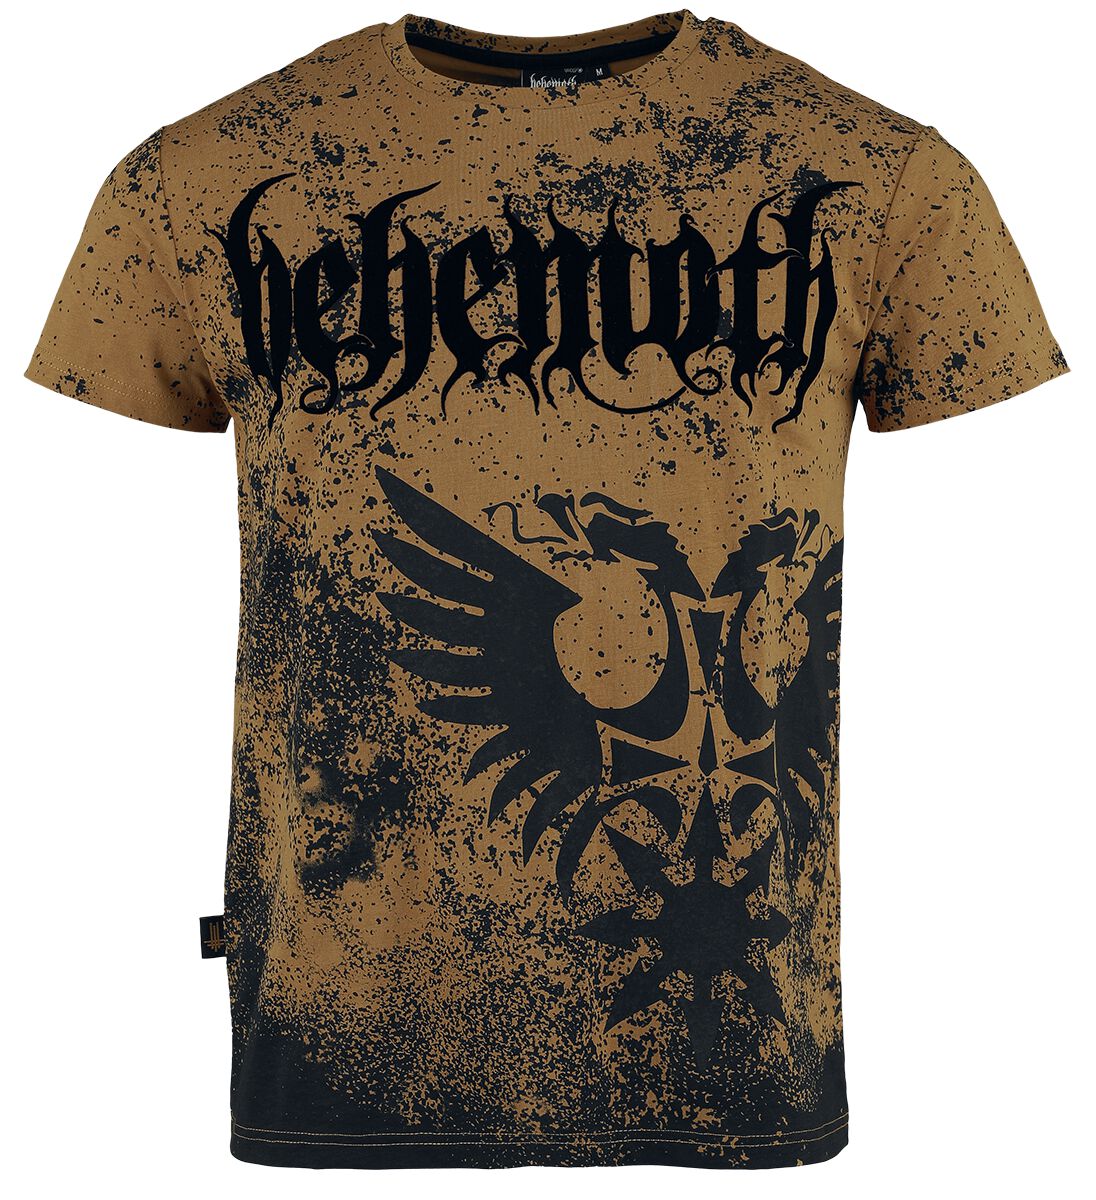 Behemoth T-Shirt - EMP Signature Collection - S bis XXL - für Männer - Größe S - braun/schwarz  - EMP exklusives Merchandise!